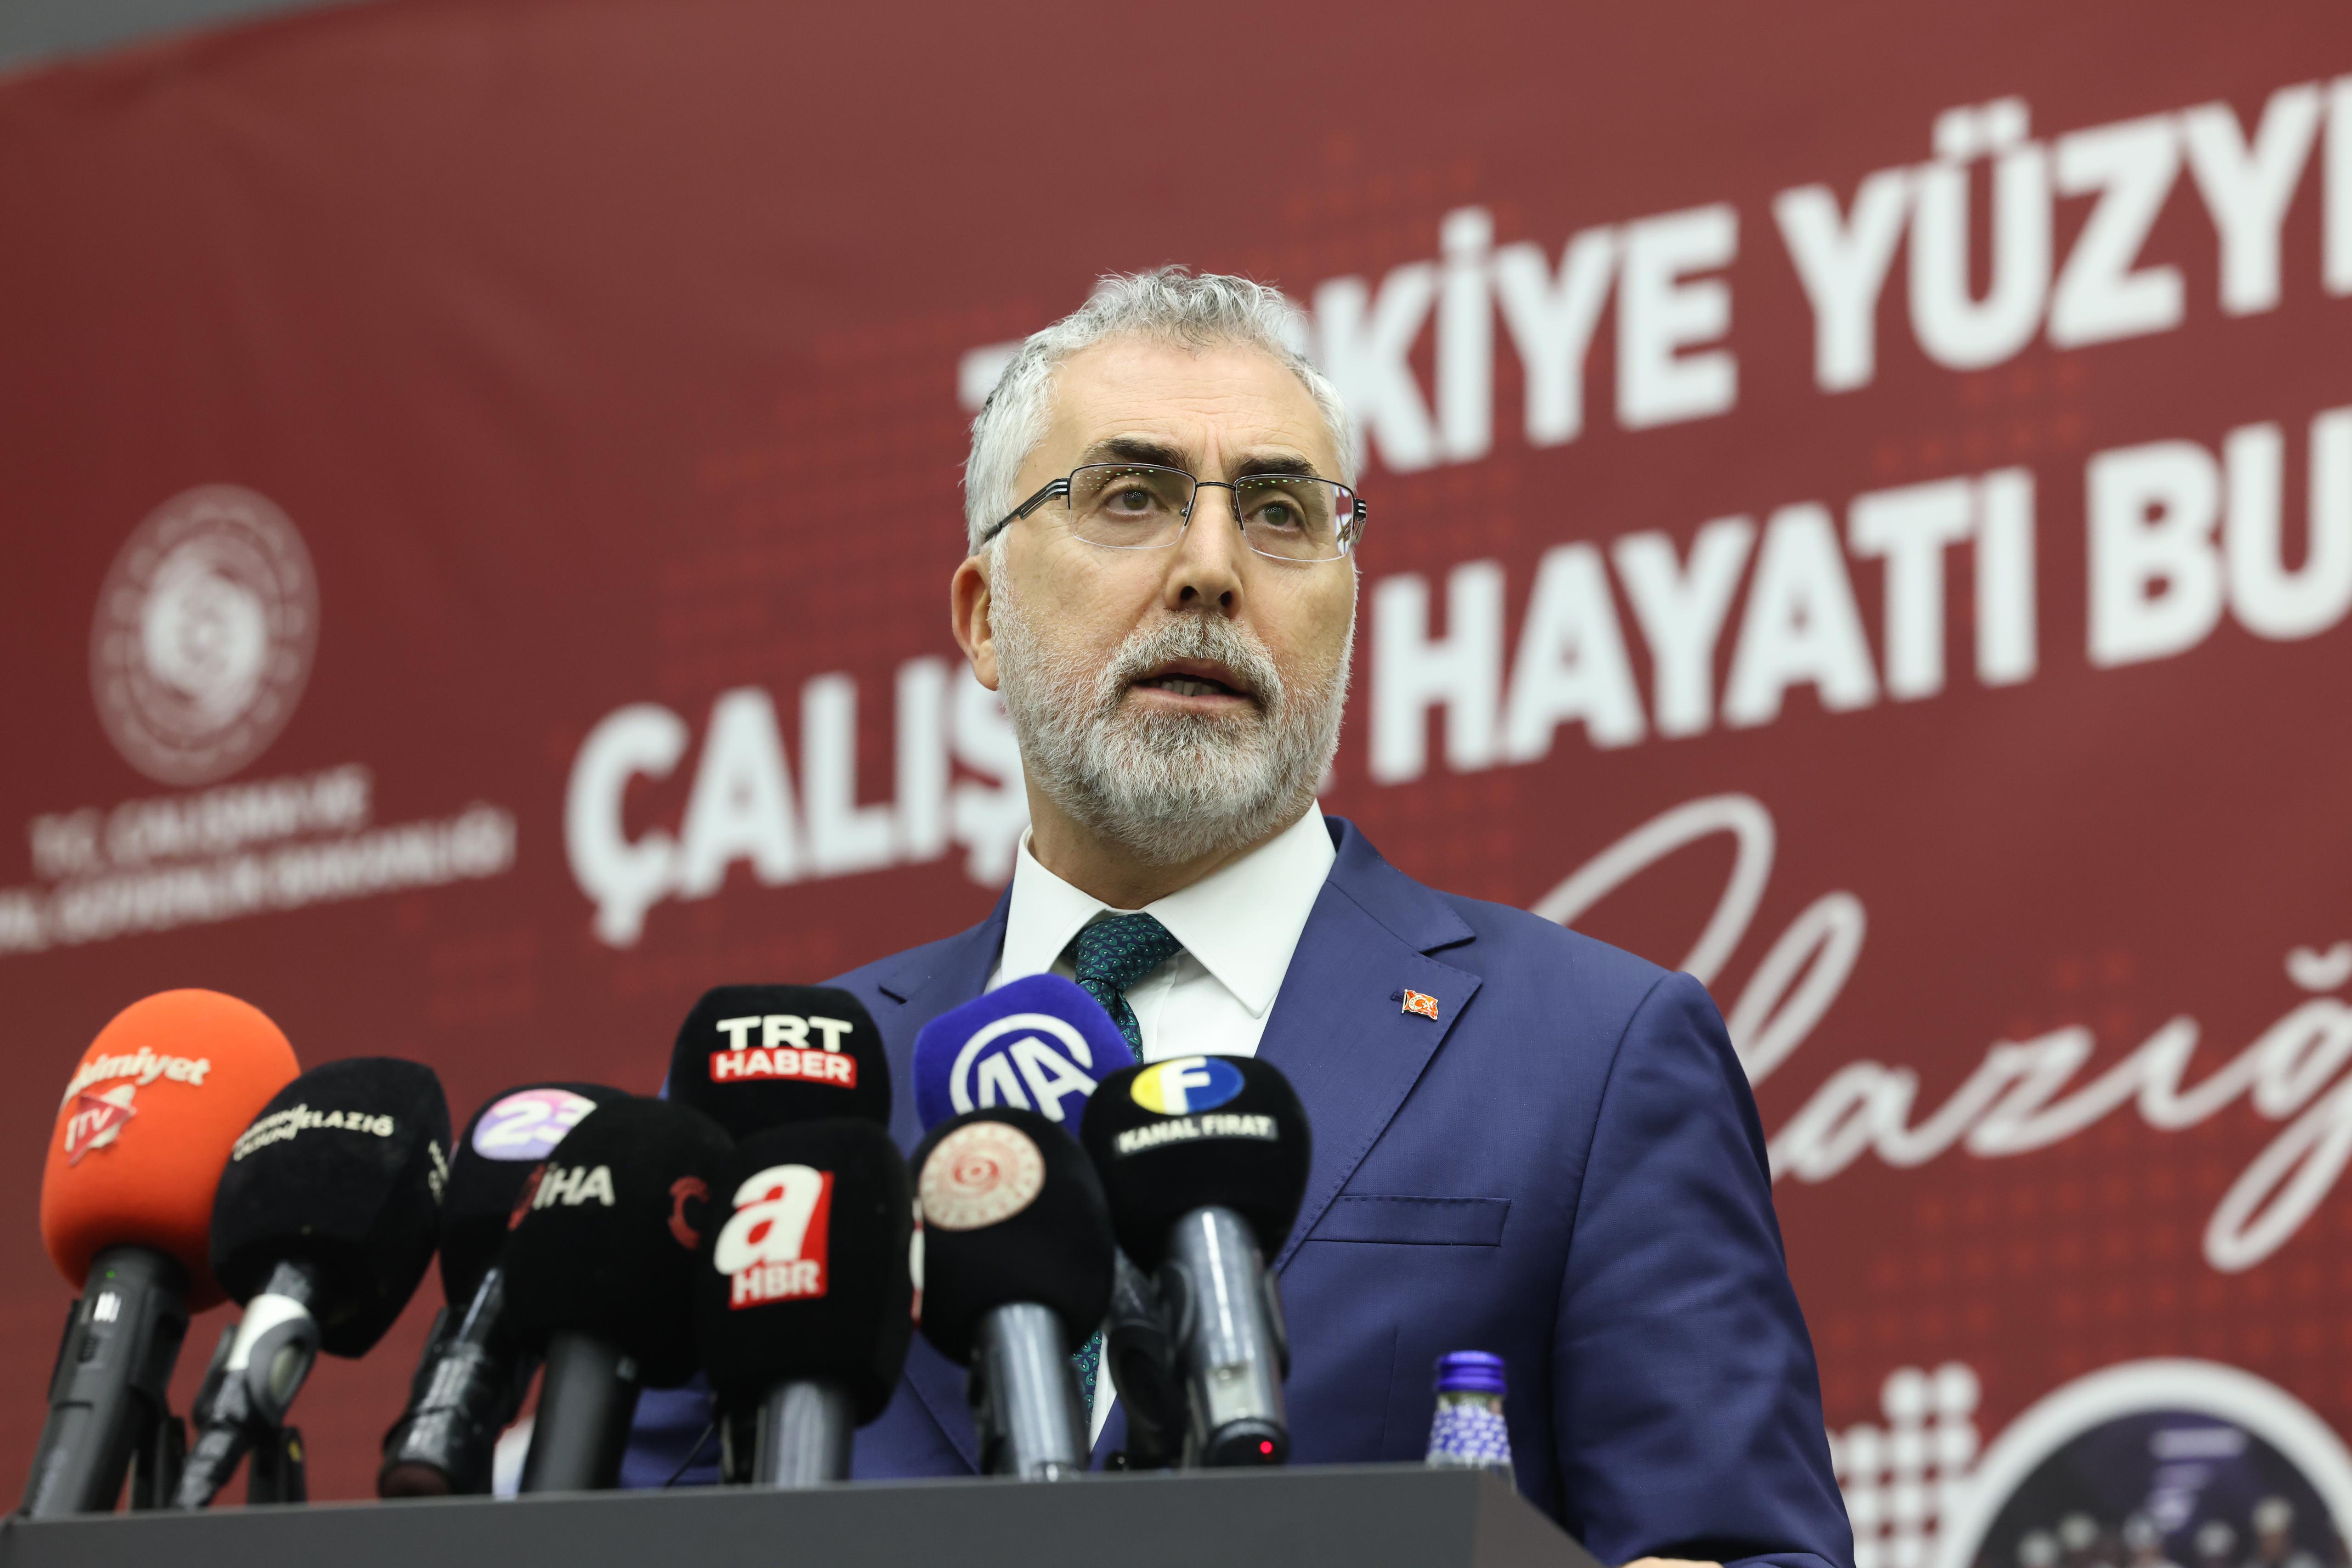 Çalışma ve Sosyal Güvenlik Bakanı Elazığ'da Deprem Sonrası İstihdam Tedbirlerini Açıkladı